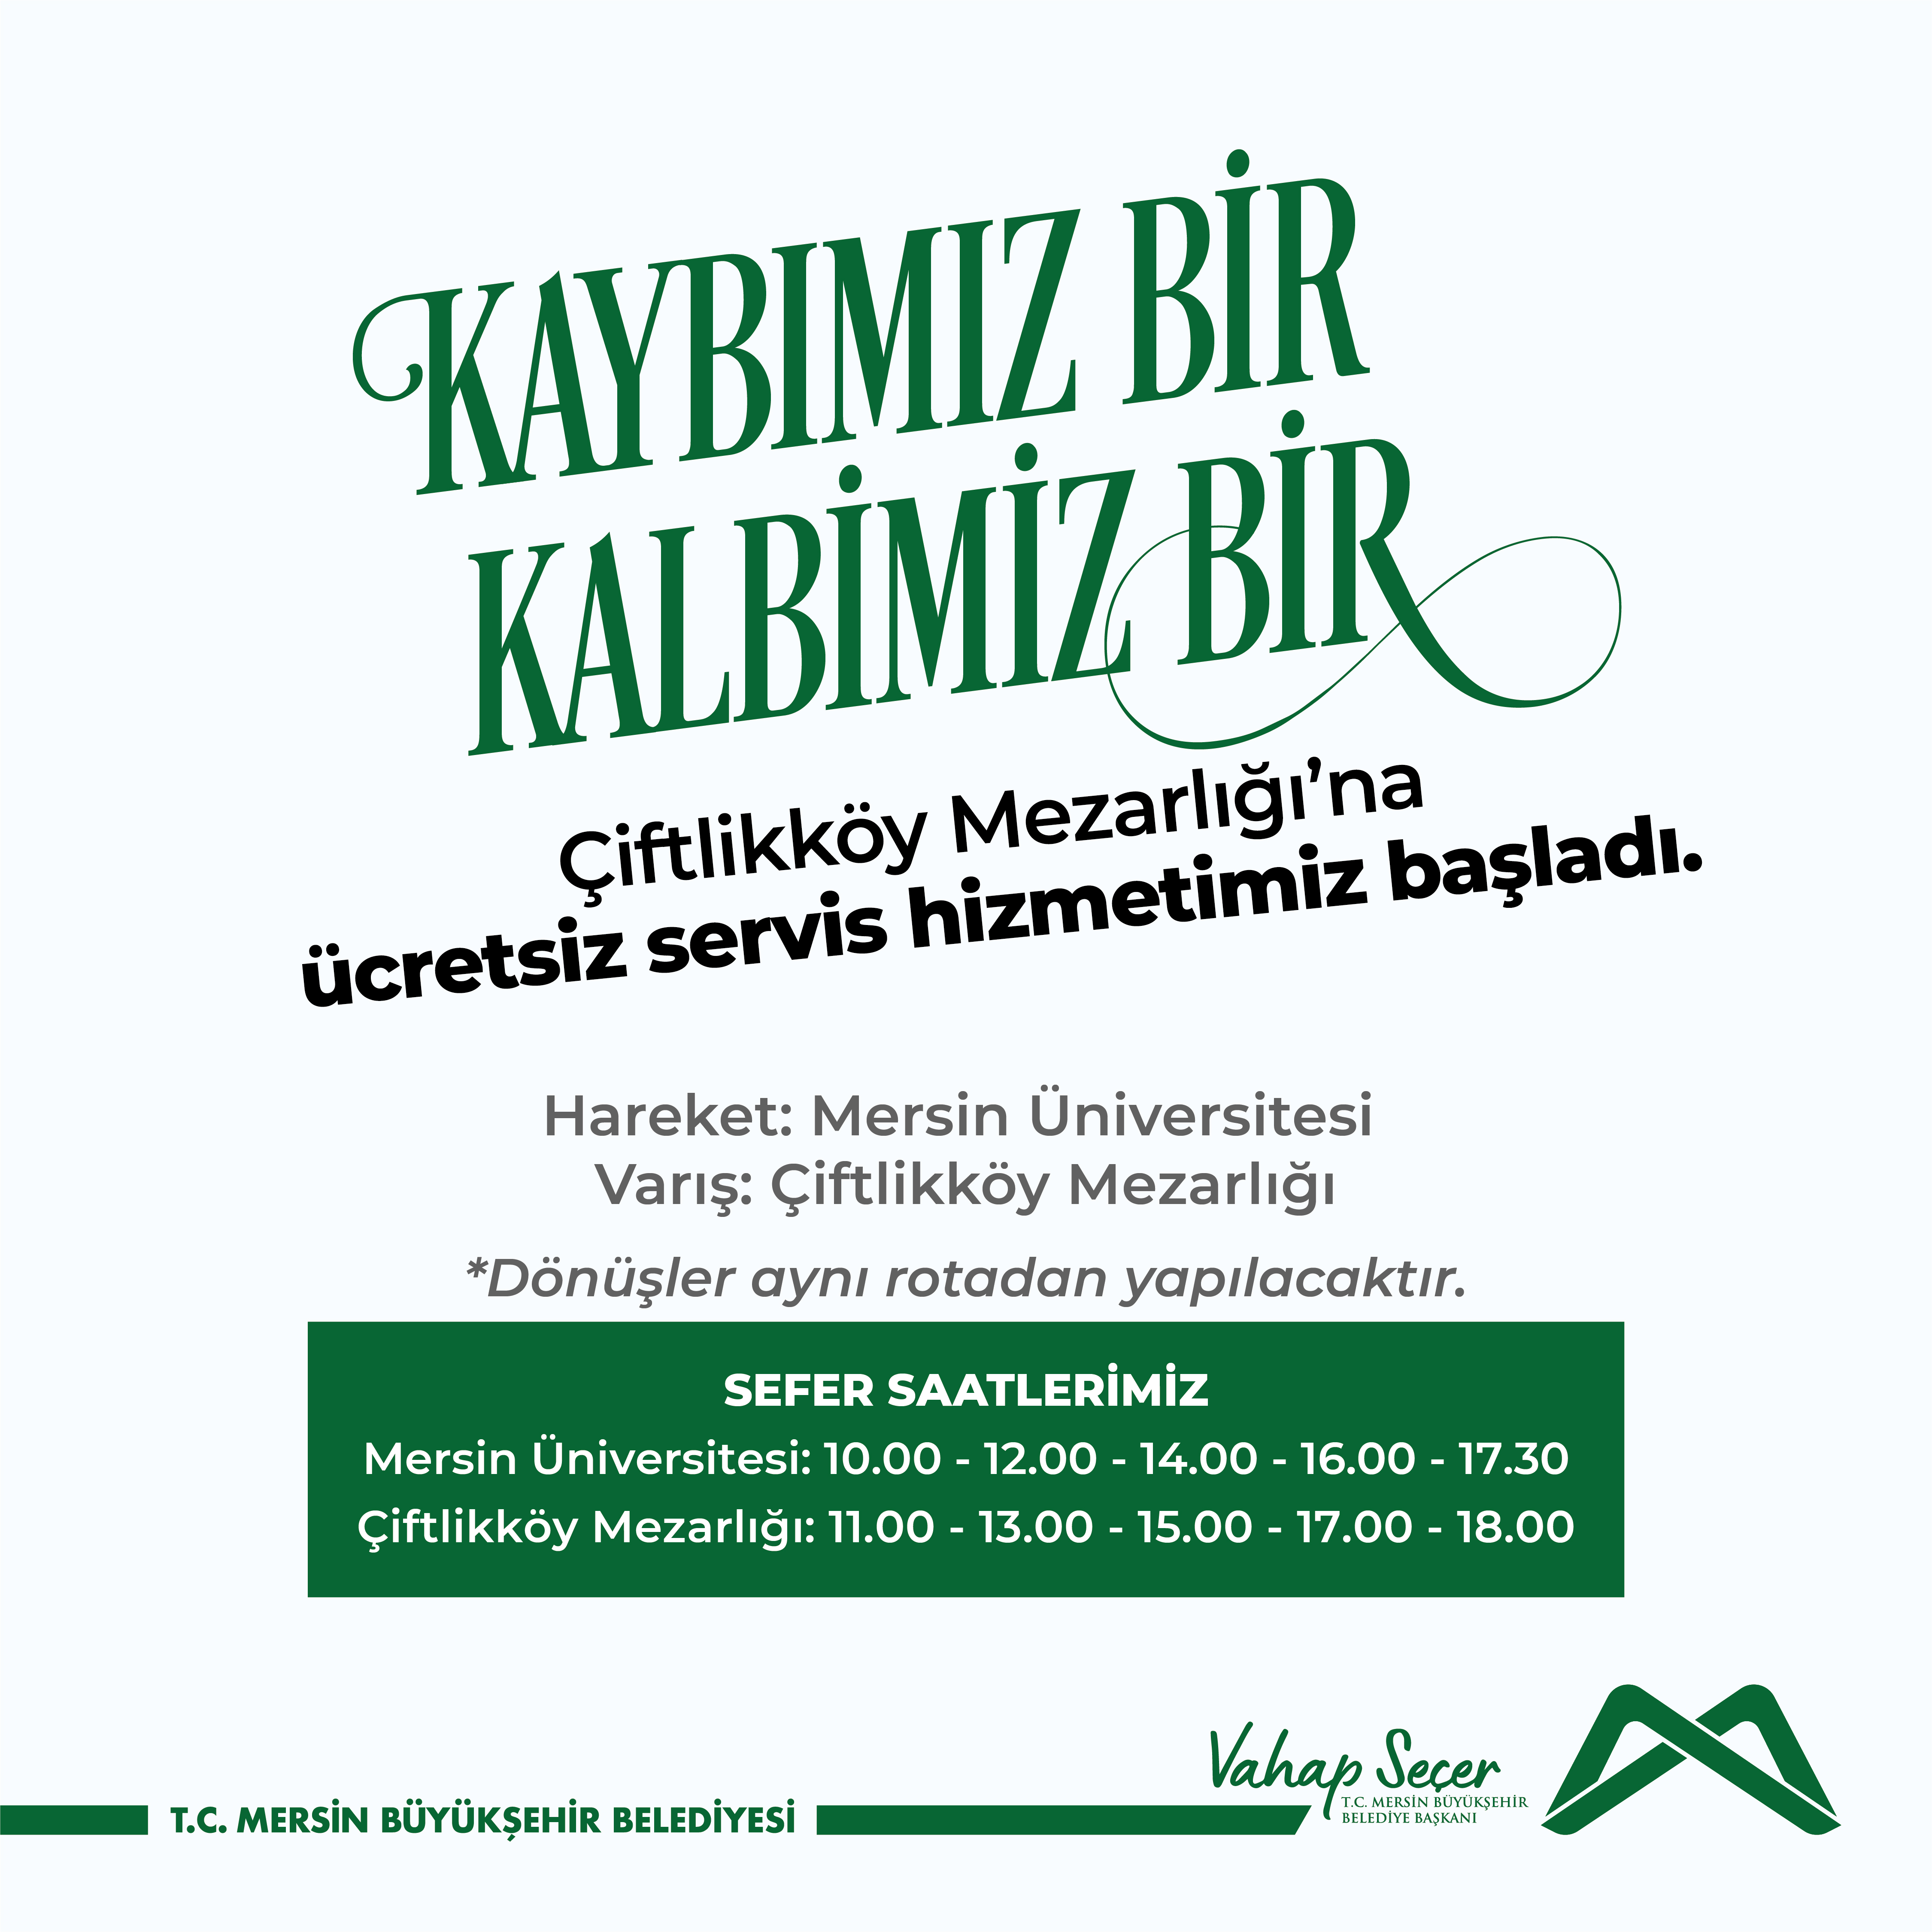 Çiftlikköy Mezarlığı'na ücretsiz servis hizmetimiz başladı.